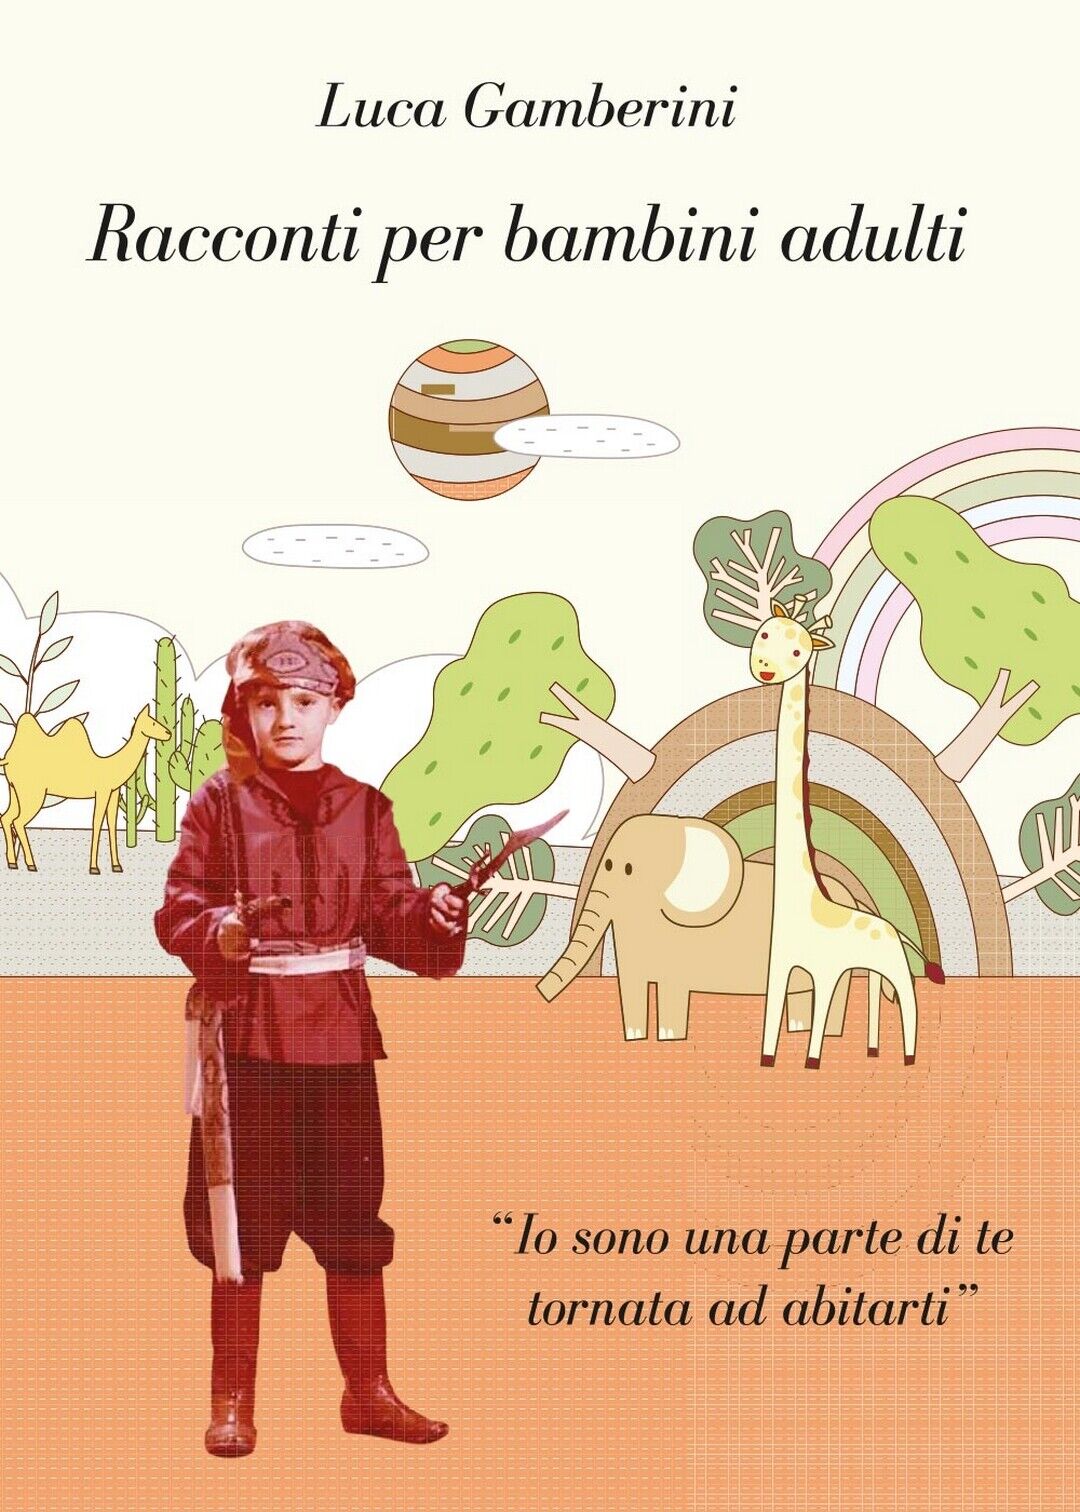 Racconti per bambini adulti  di Luca Gamberini,  2017,  Youcanprint